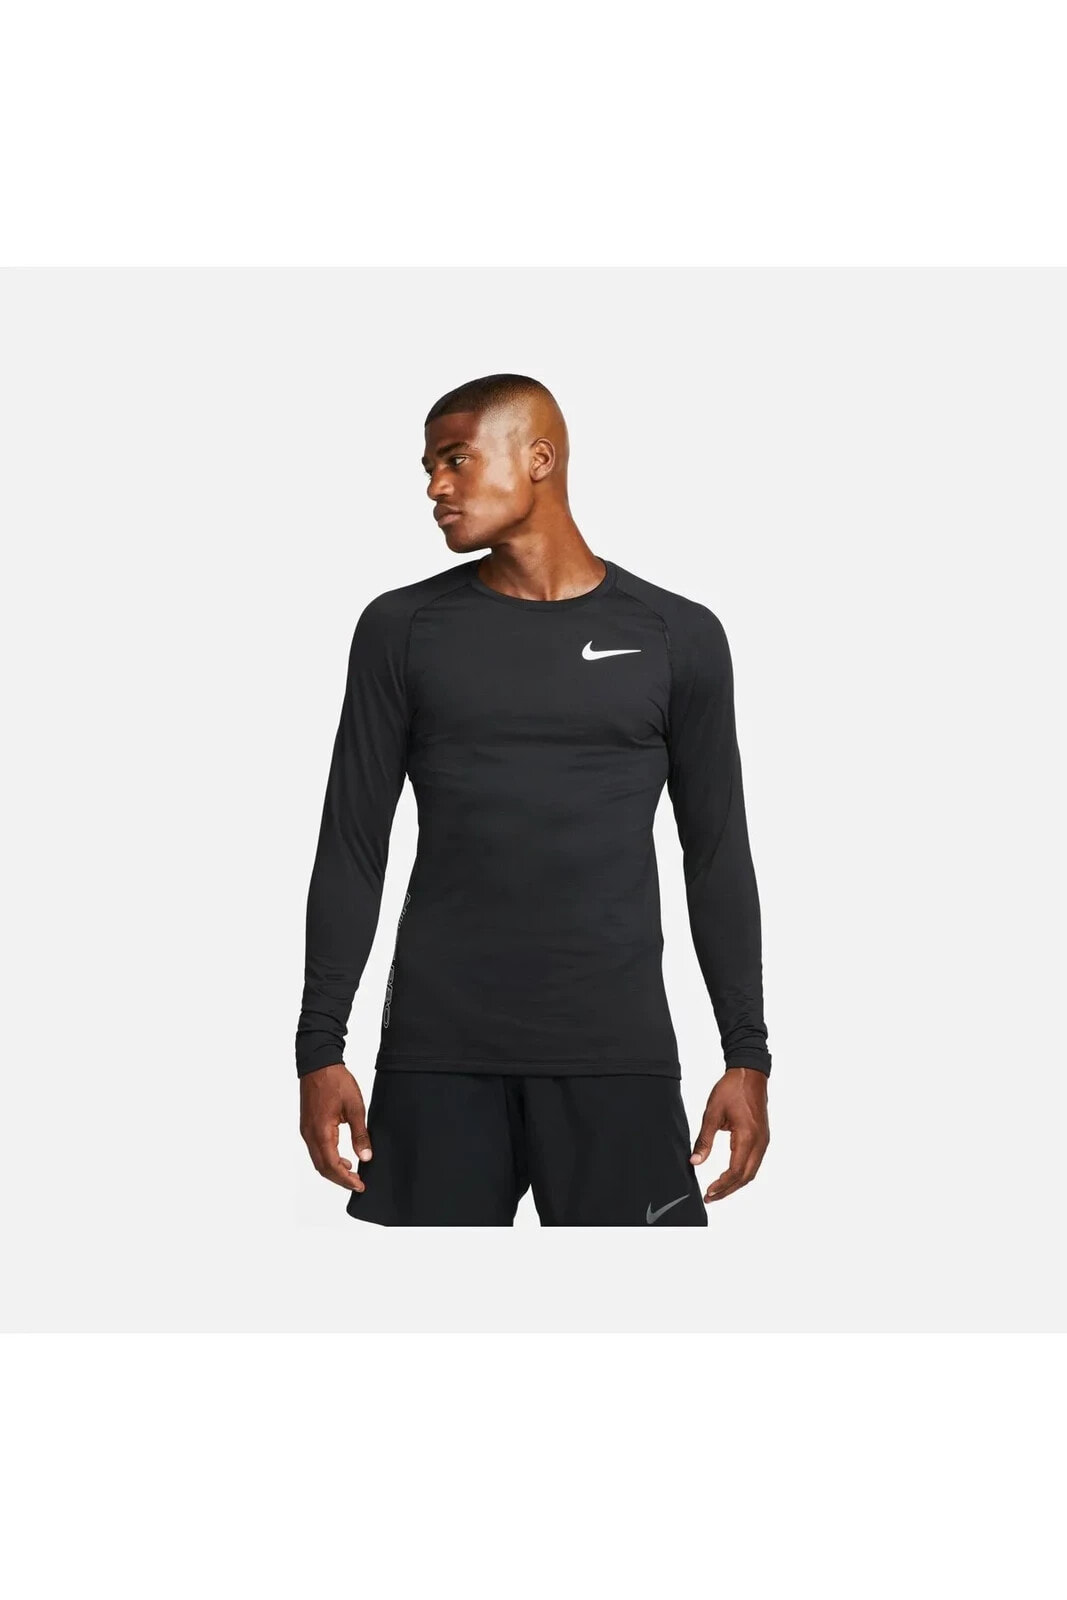 Warm Athletic Training Long-Sleeve Siyah Erkek T-shirt DQ5448-010